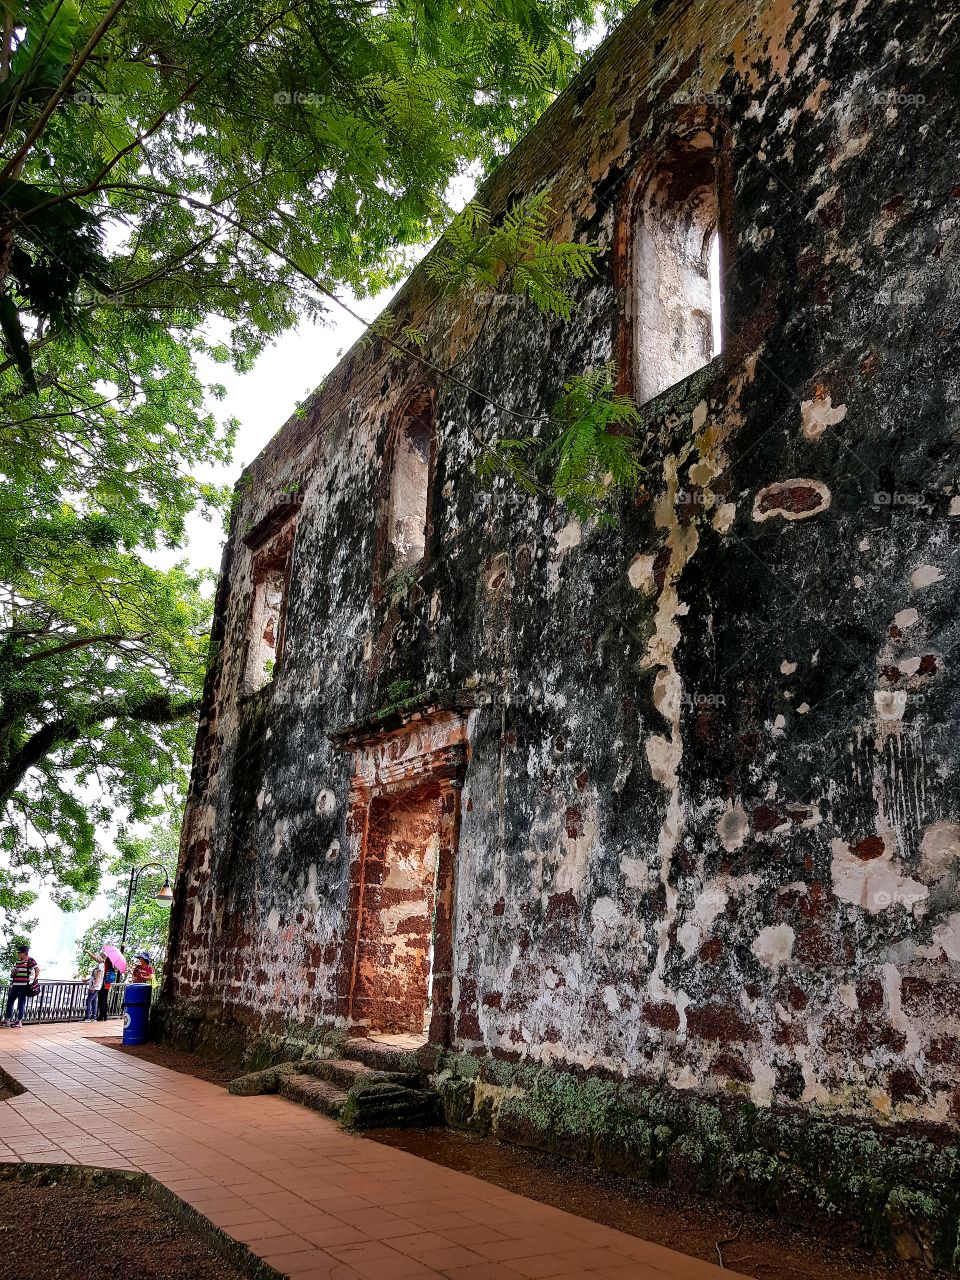 st.pauls church in melaka malaysia built since 1521